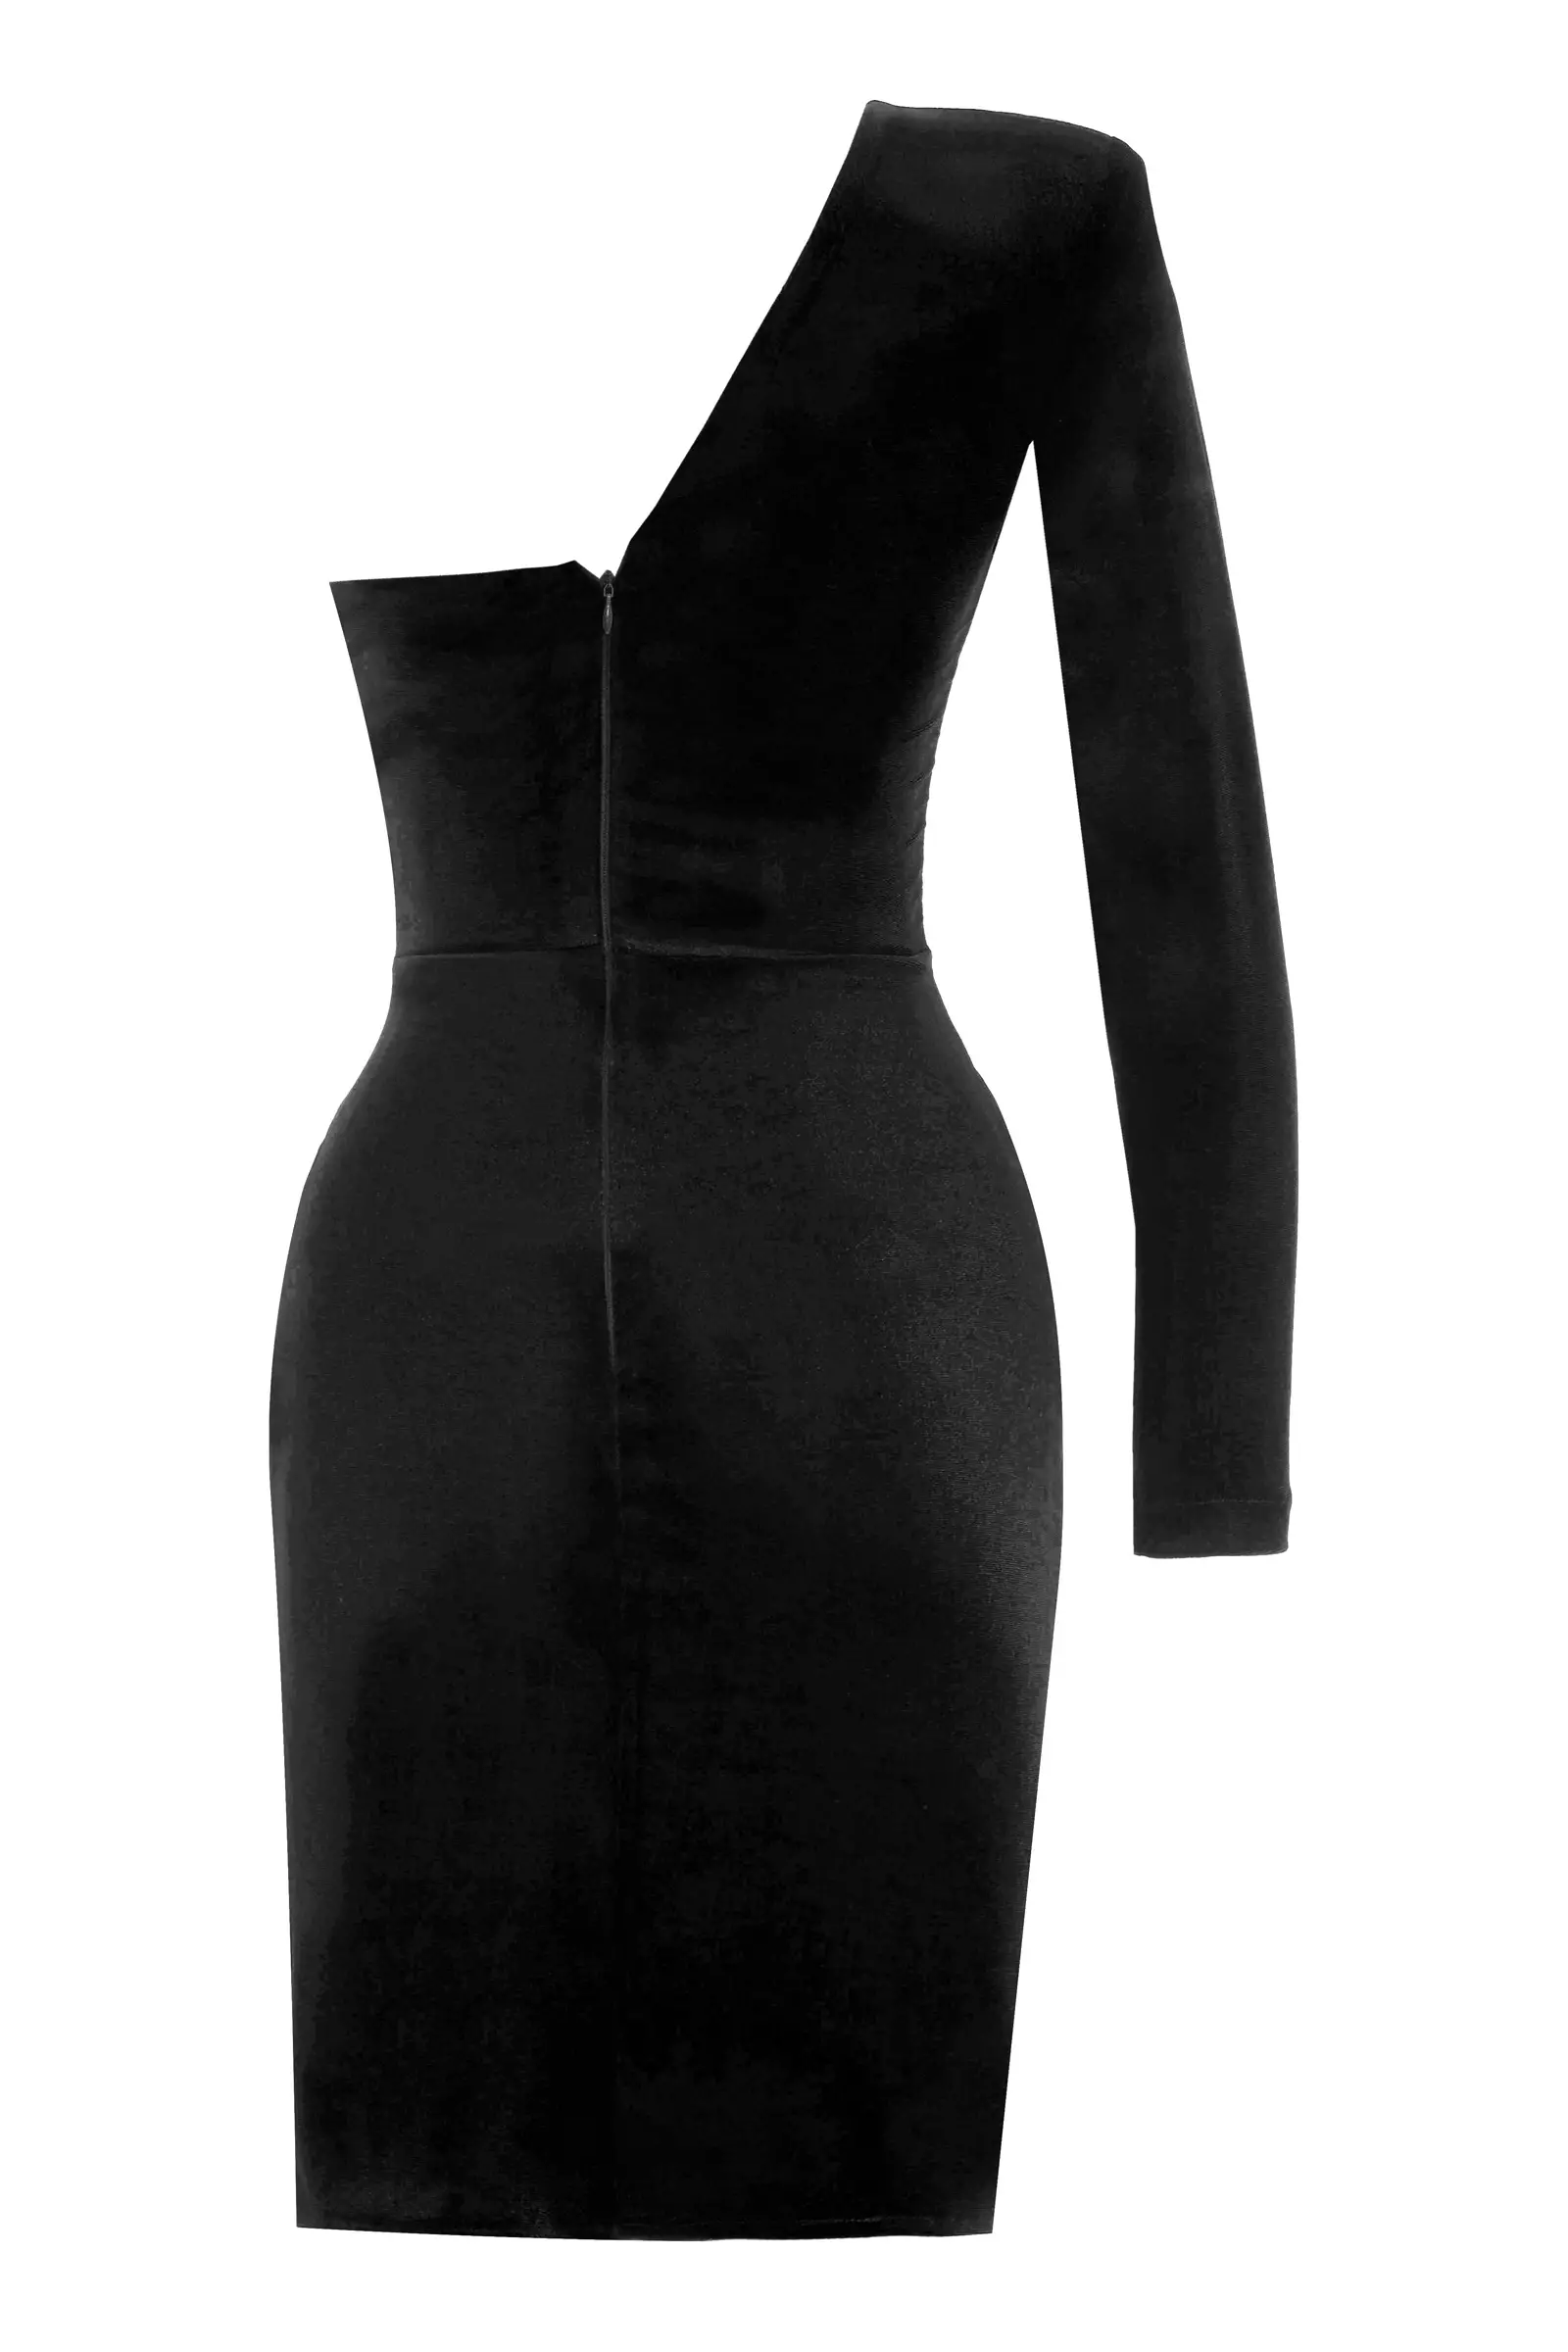 Black velvet one arm mini dress